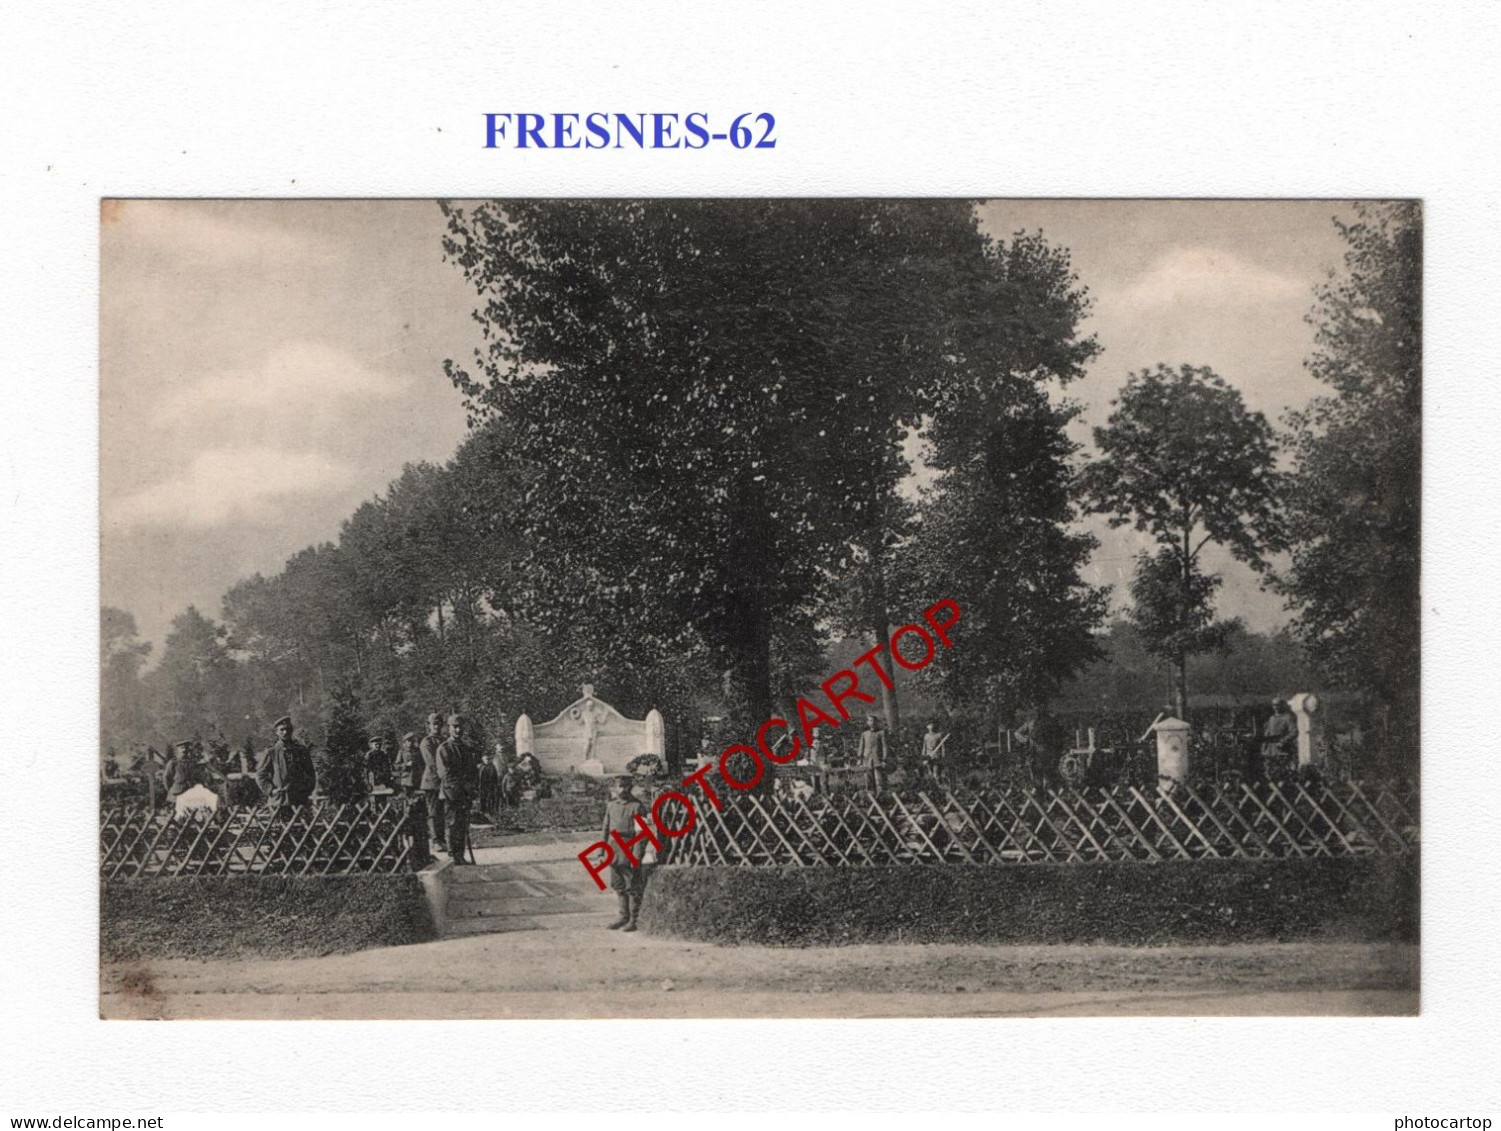 FRESNES-62-Monument-Cimetiere-CARTE Imprimee Allemande-GUERRE 14-18-1 WK-MILITARIA- - Oorlogsbegraafplaatsen